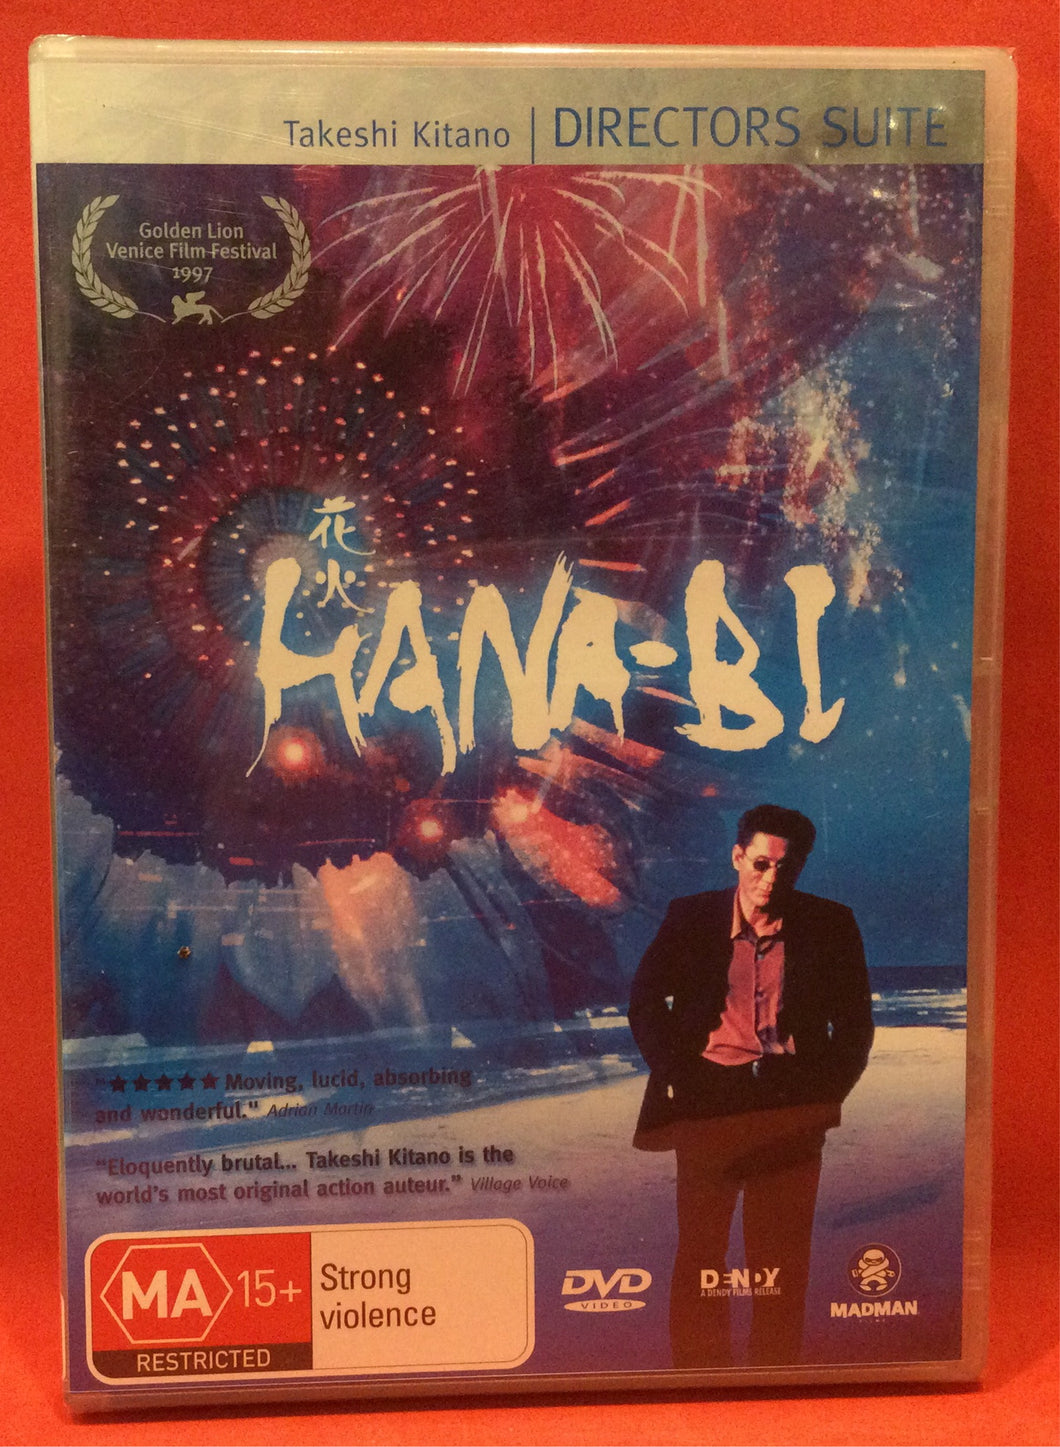 HANA-BI DVD